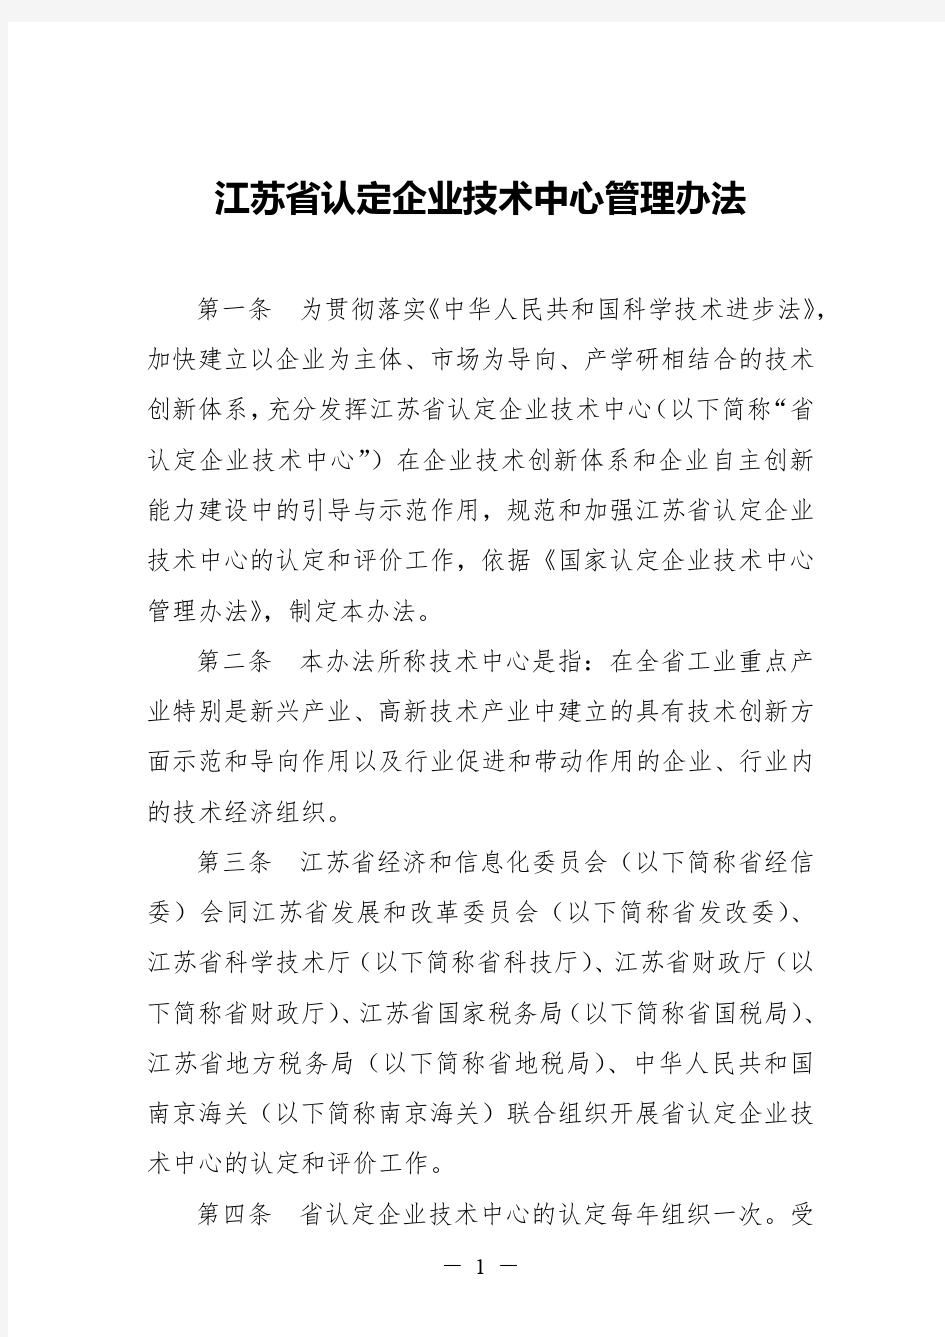 江苏省认定企业技术中心管理办法